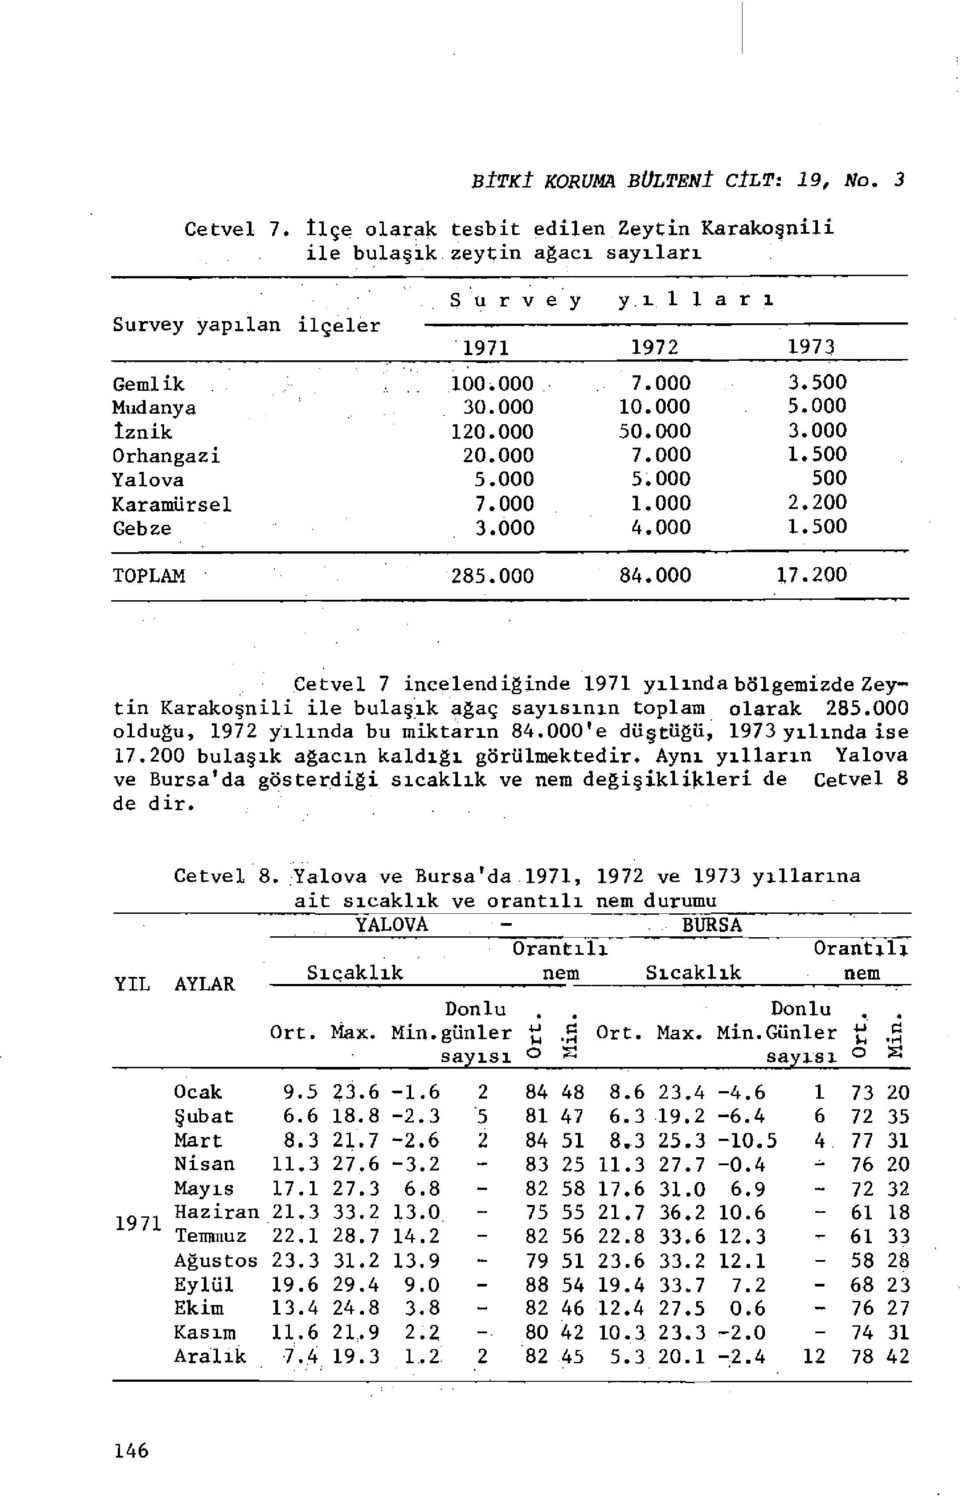 3. 12. 2. 5. 7. 3. 7. 1. 5. 7. 5. 1. 4. 3.5 5. 3. 1.5 5 2.2 1.5 TOPLAM 285. 84. 17.2 Cetvel 7 incelendiğinde 1971 yılında bölgemizde Zeytin Karakoşnili ile bulaşık ağaç sayısının toplam olarak 285.